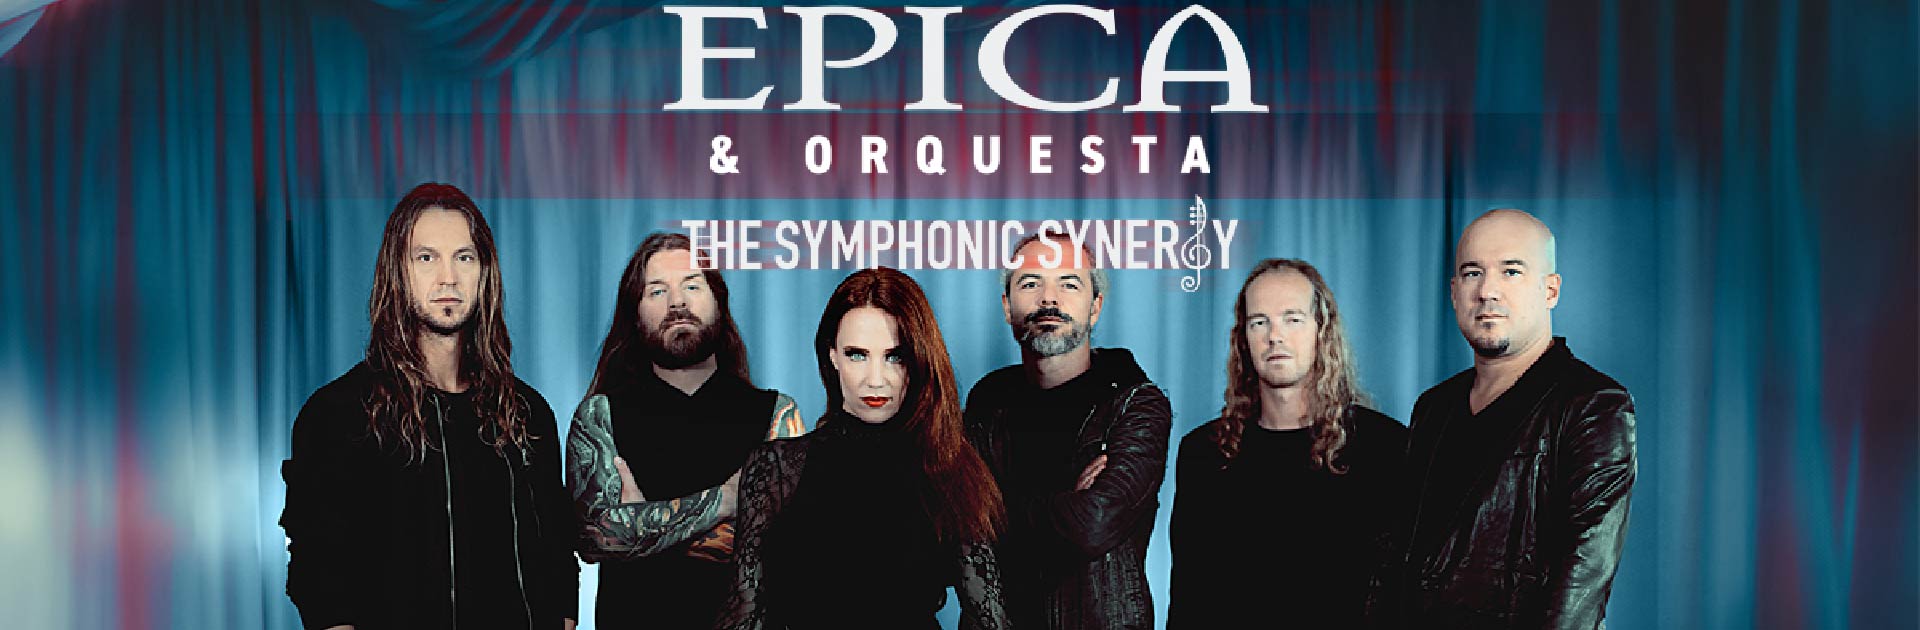 Épica & Orquesta